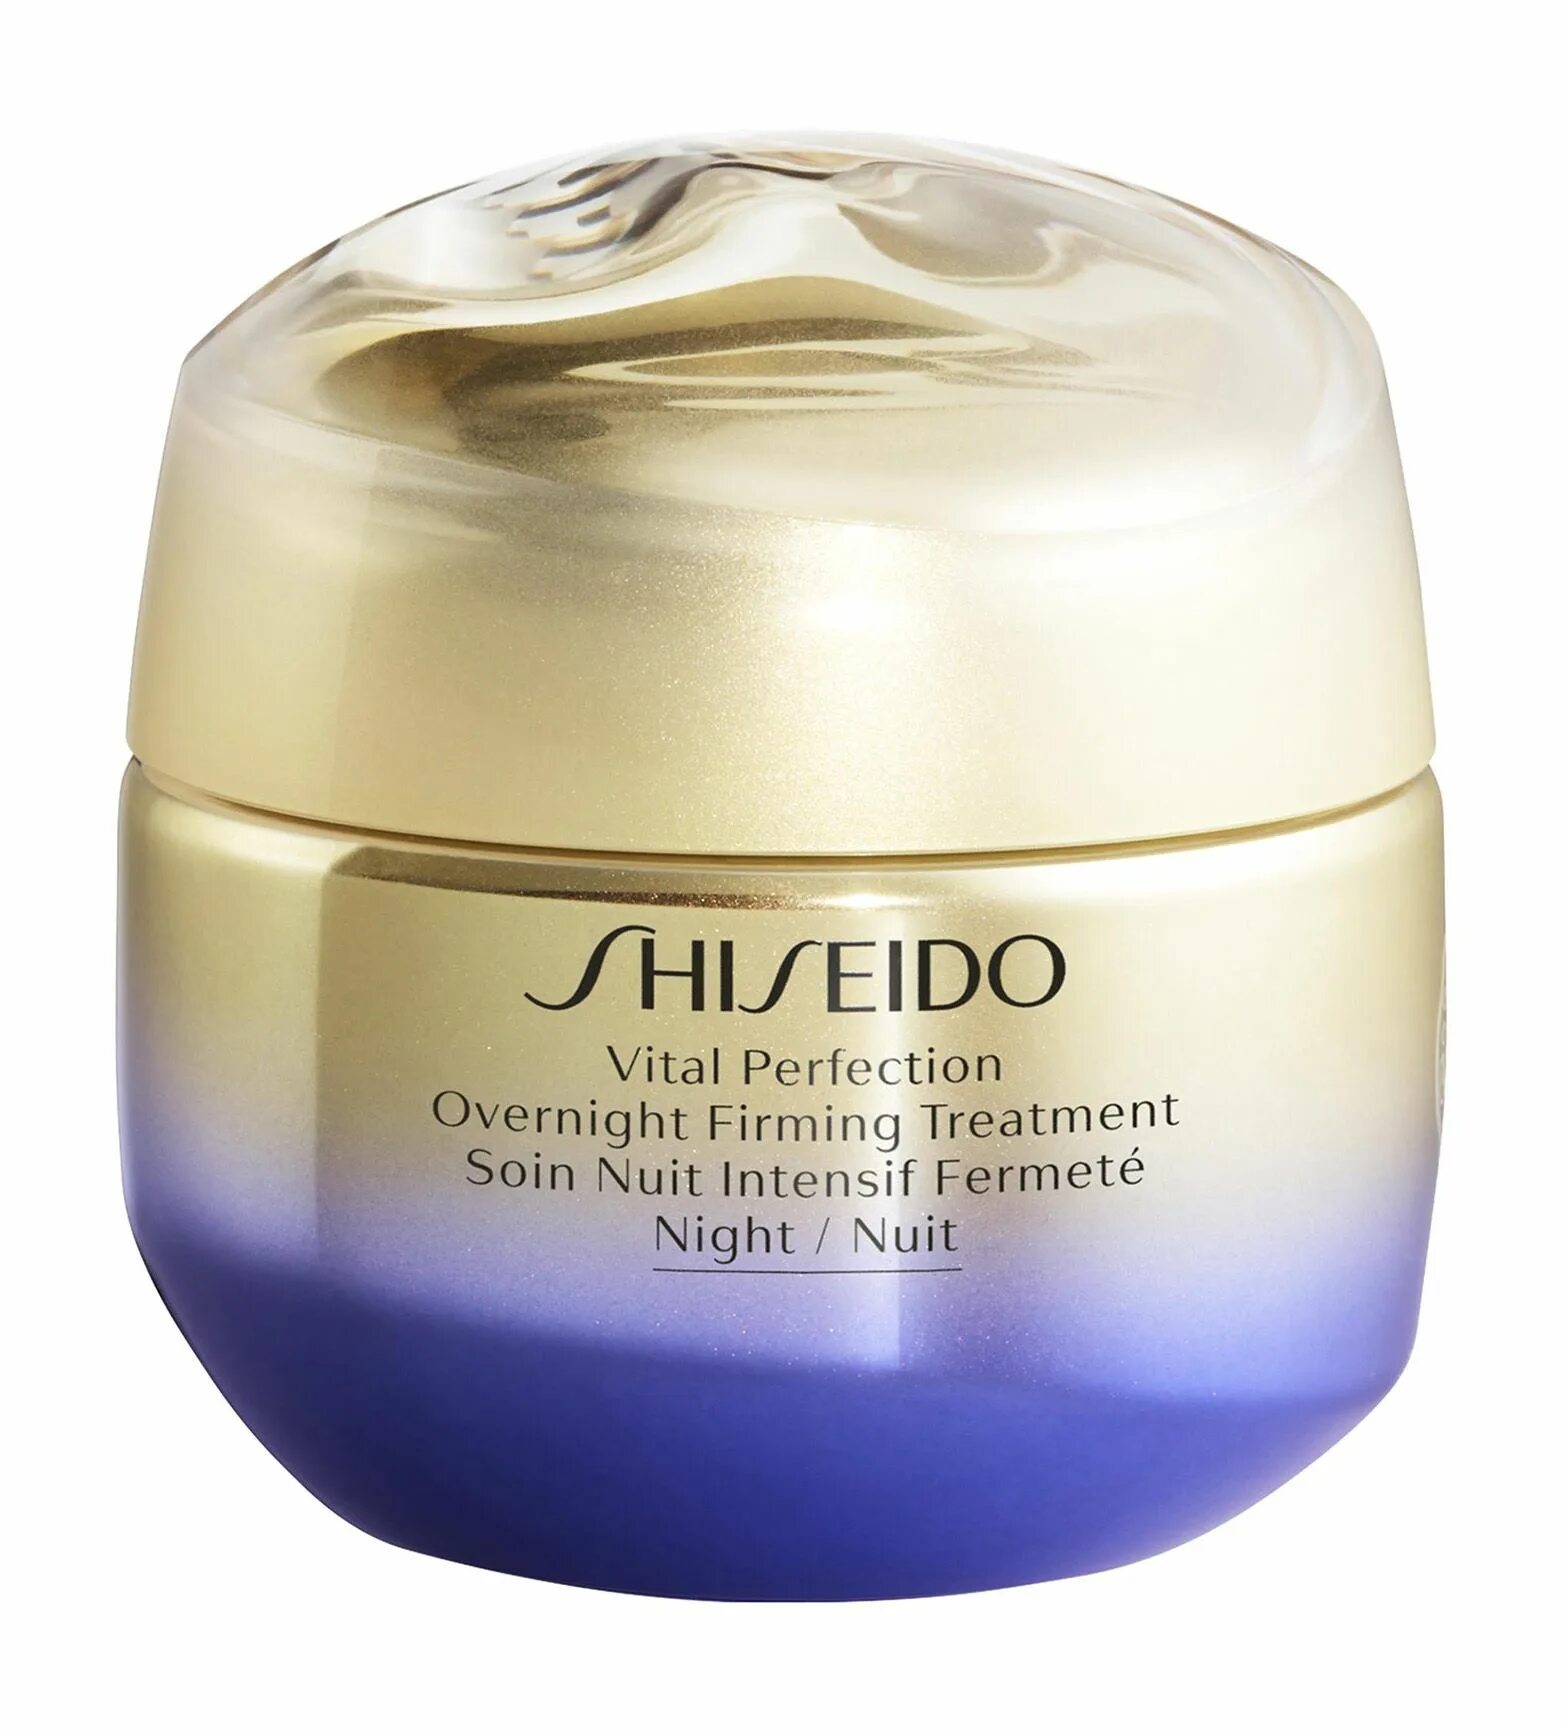 Крем shiseido отзывы. Шисейдо СПФ 30. Шисейдо Vital perfection. Shiseido Vital perfection ночной лифтинг-крем, повышающий упругость кожи. Шисейдо крем Витал Перфекшен.